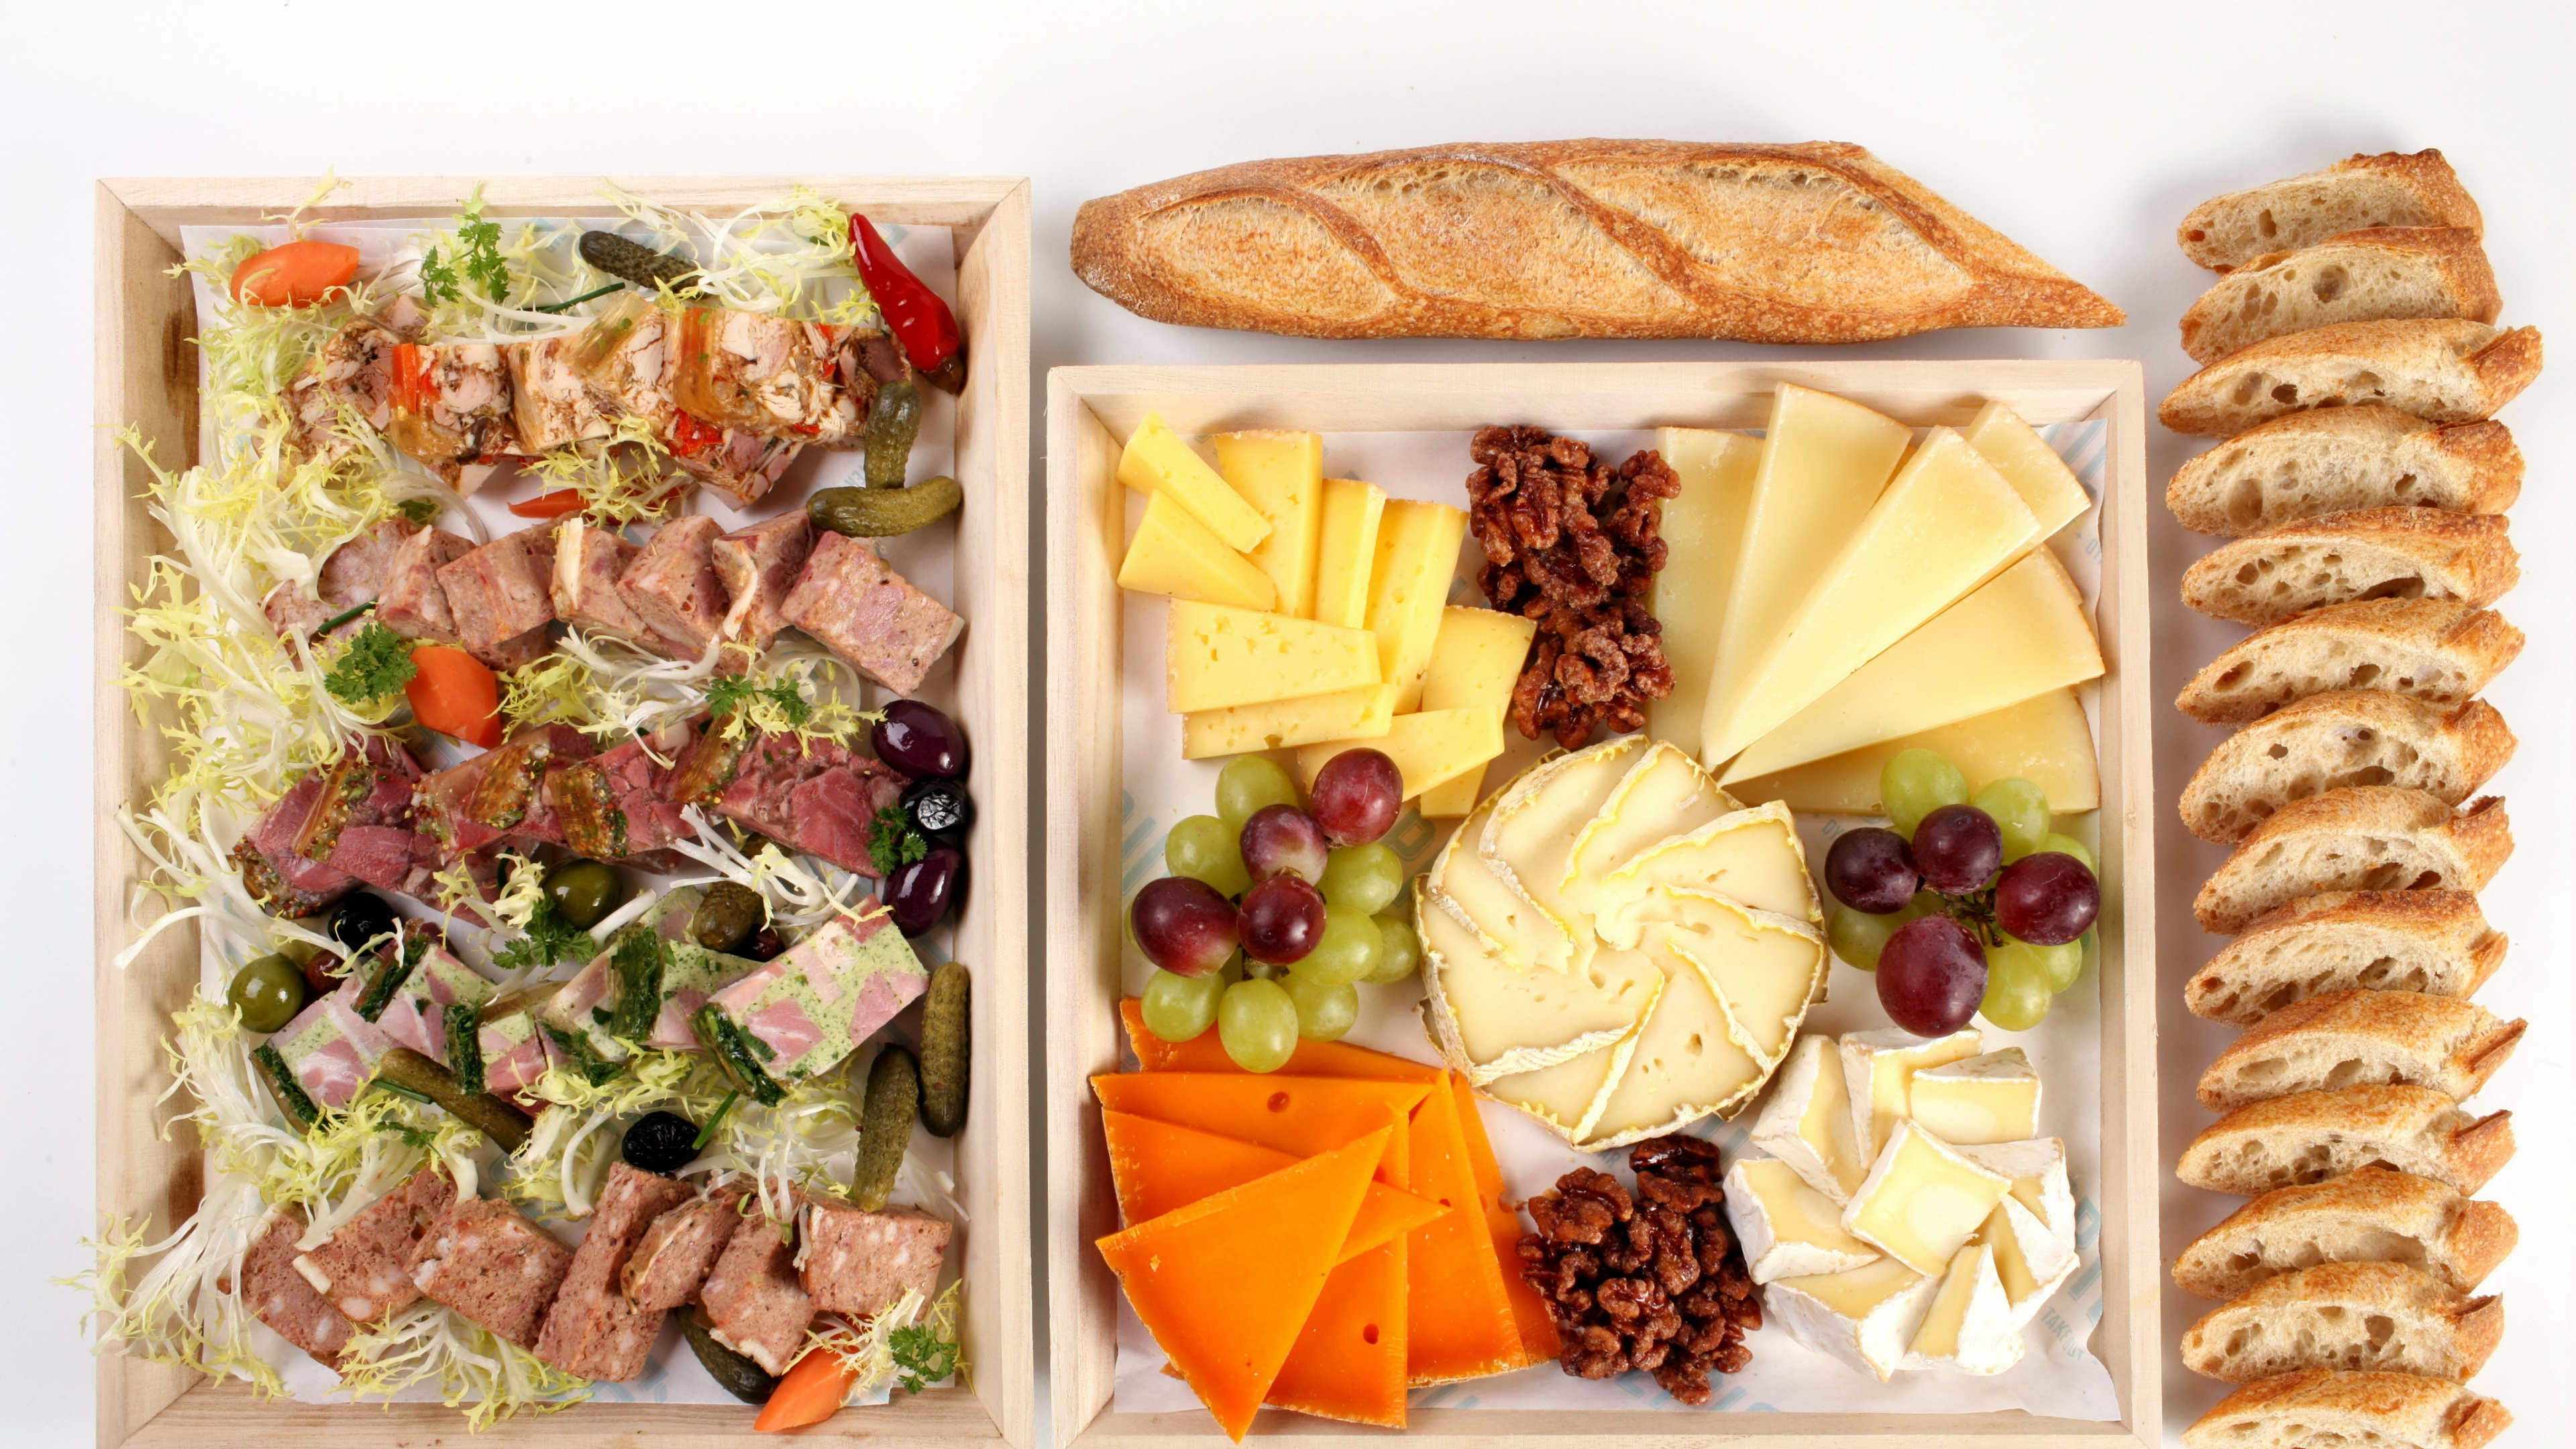 沙拉, 奶酪, 面包, 食品, 安慰食品 壁纸 3840x2160 允许